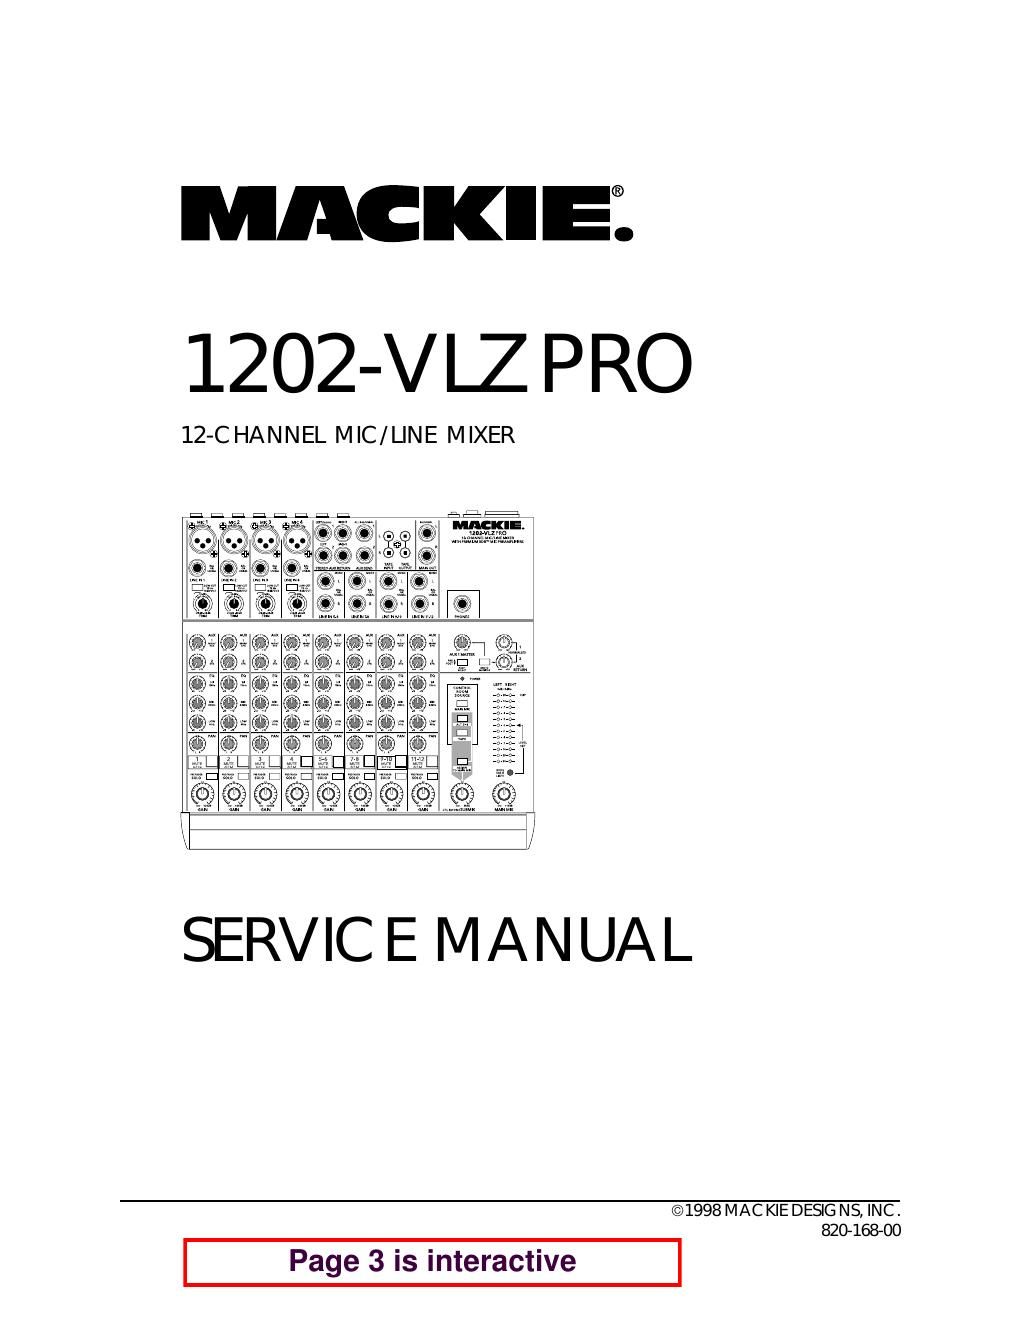 Mackie 1202 VLZ Pro Service Manual